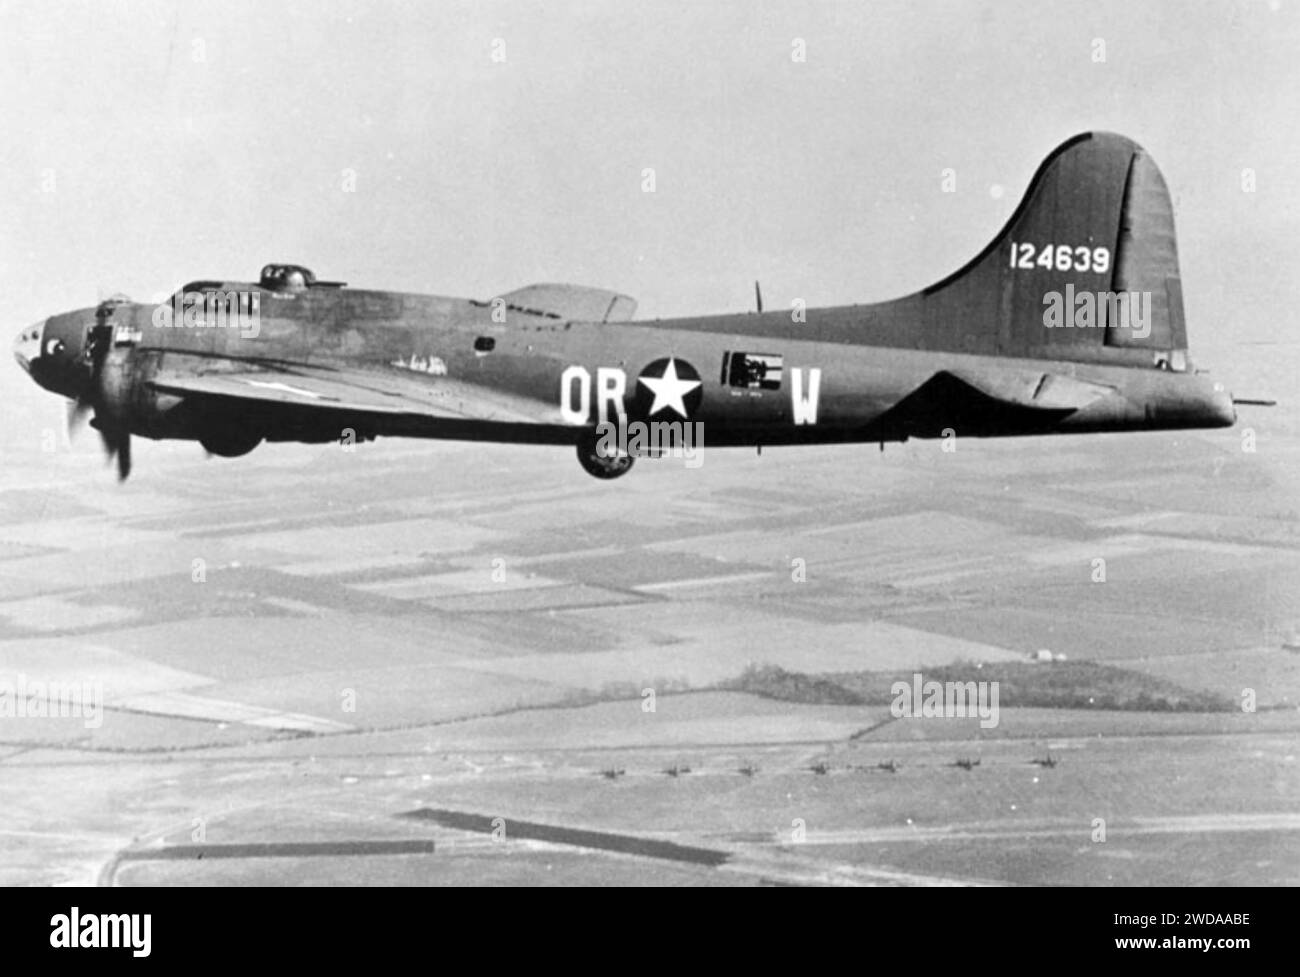 B-17F die vorsichtige Jungfrau der 323rd USAF Bomb Squadron absolvierte über 30 Bombenangriffe, bevor sie im August 1944 einen V-Bombenangriff in Frankreich zerstörte. Stockfoto